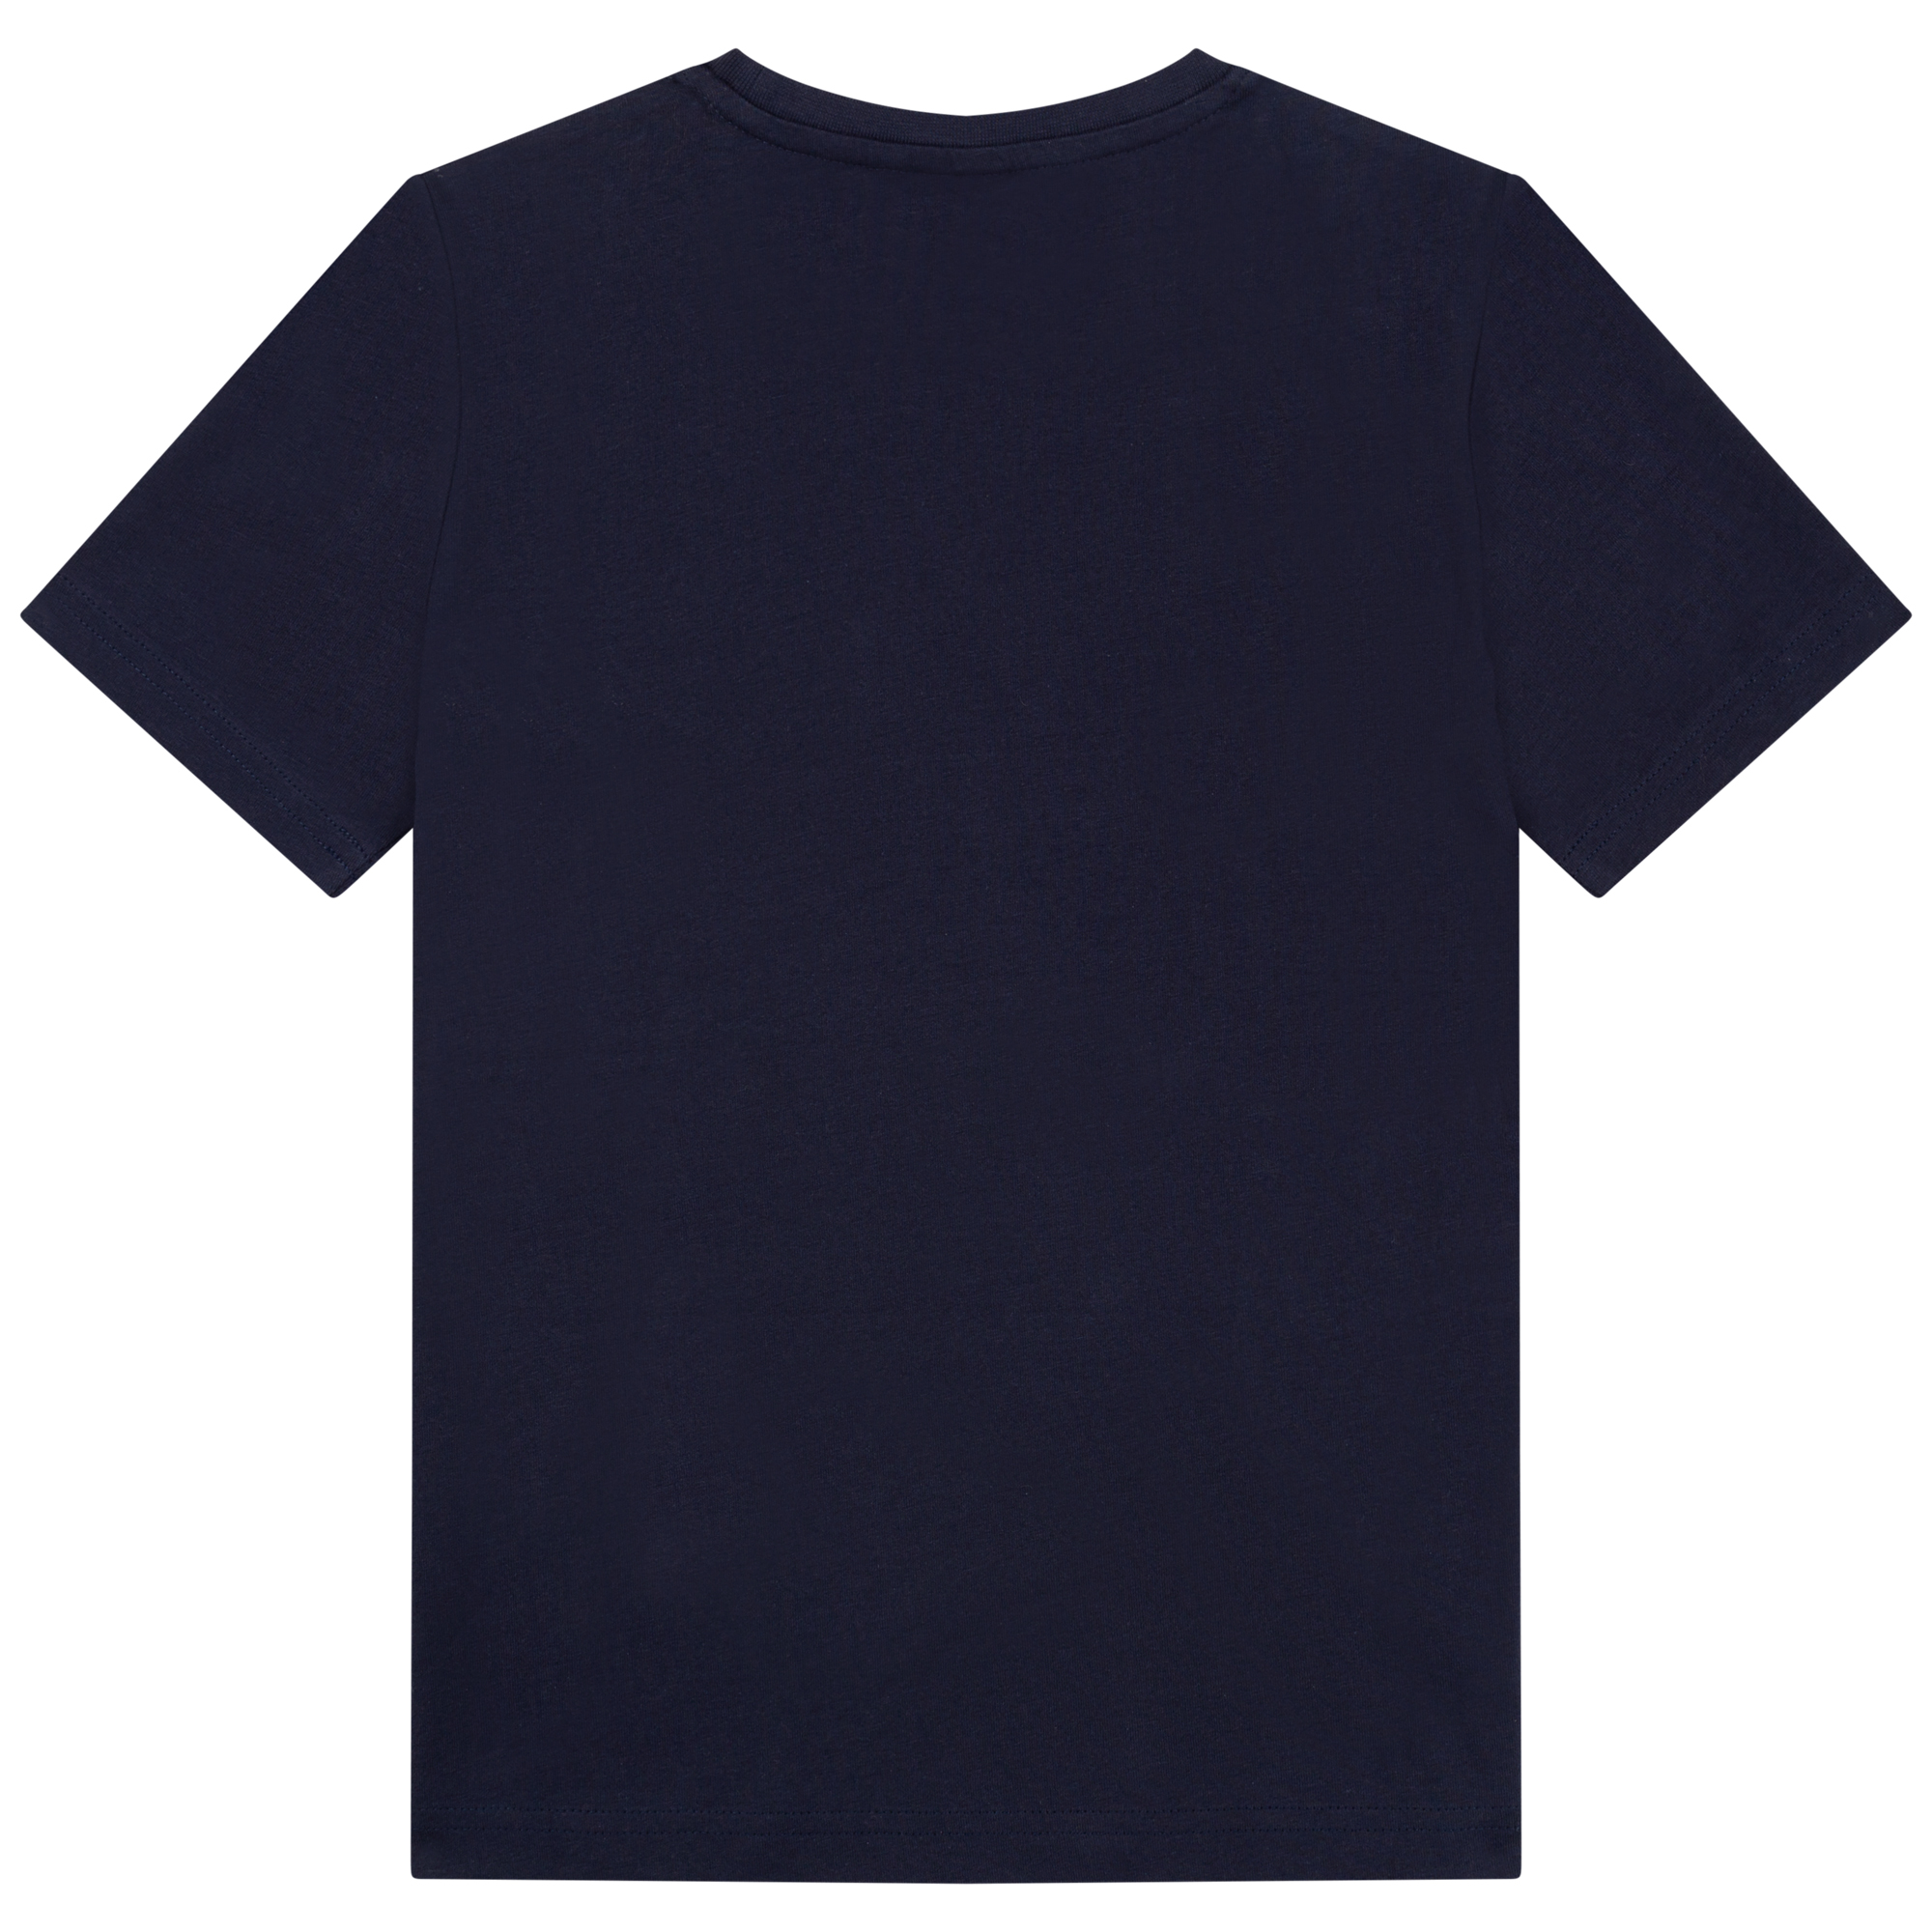 Short-sleeved cotton t-shirt BOSS for BOY